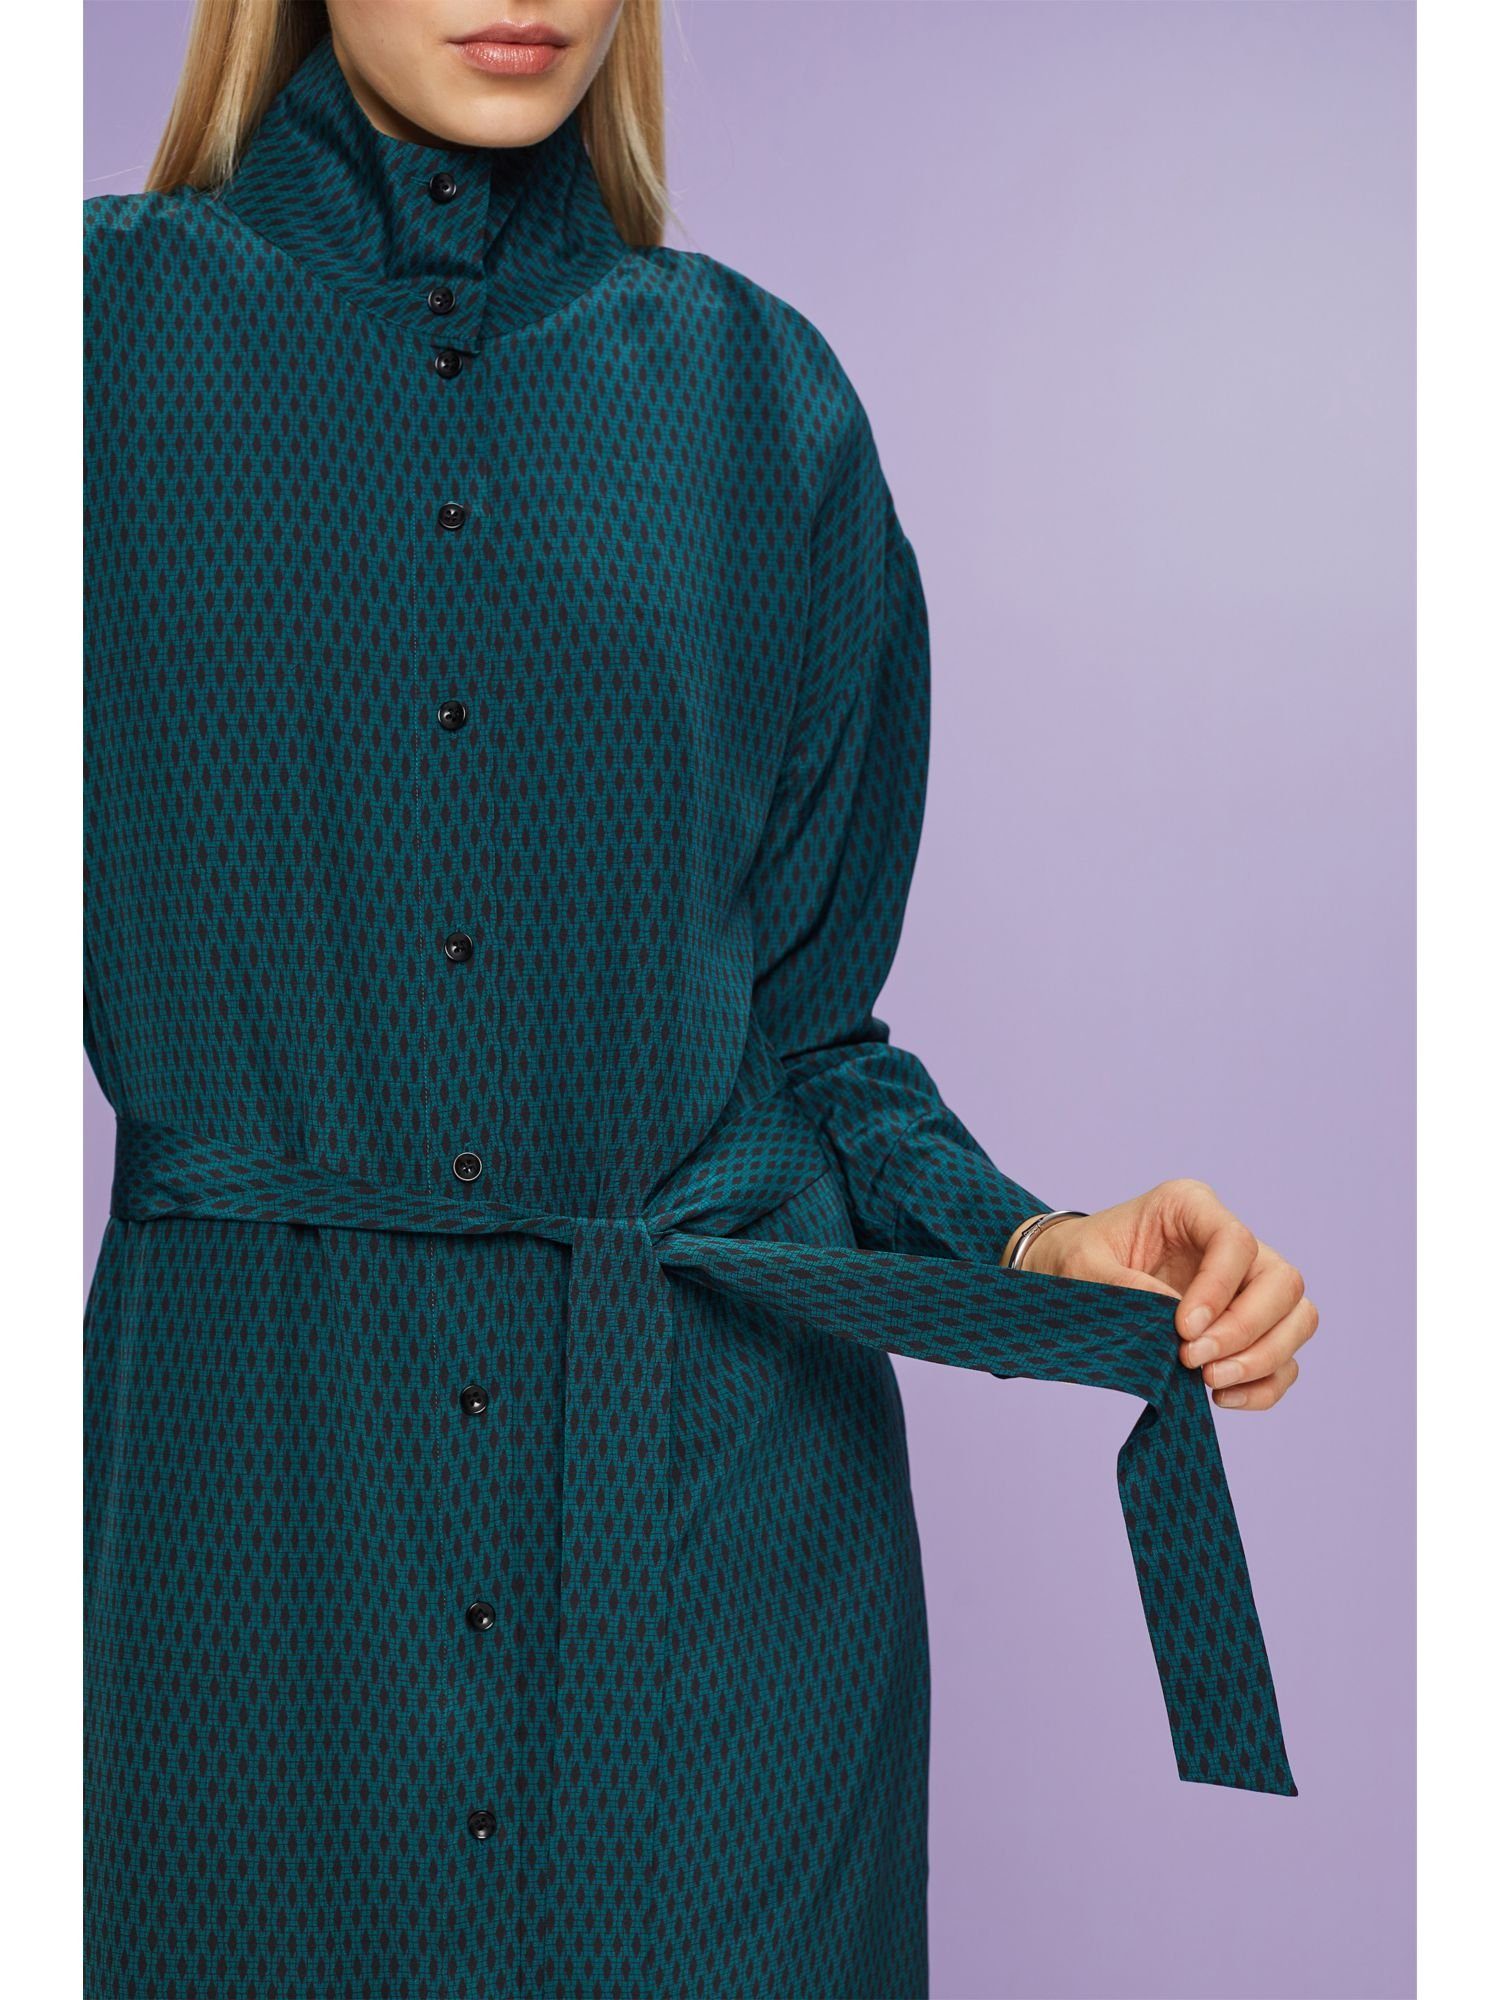 Maxikleid Collection Hemdblusenkleid Seide EMERALD GREEN aus Esprit